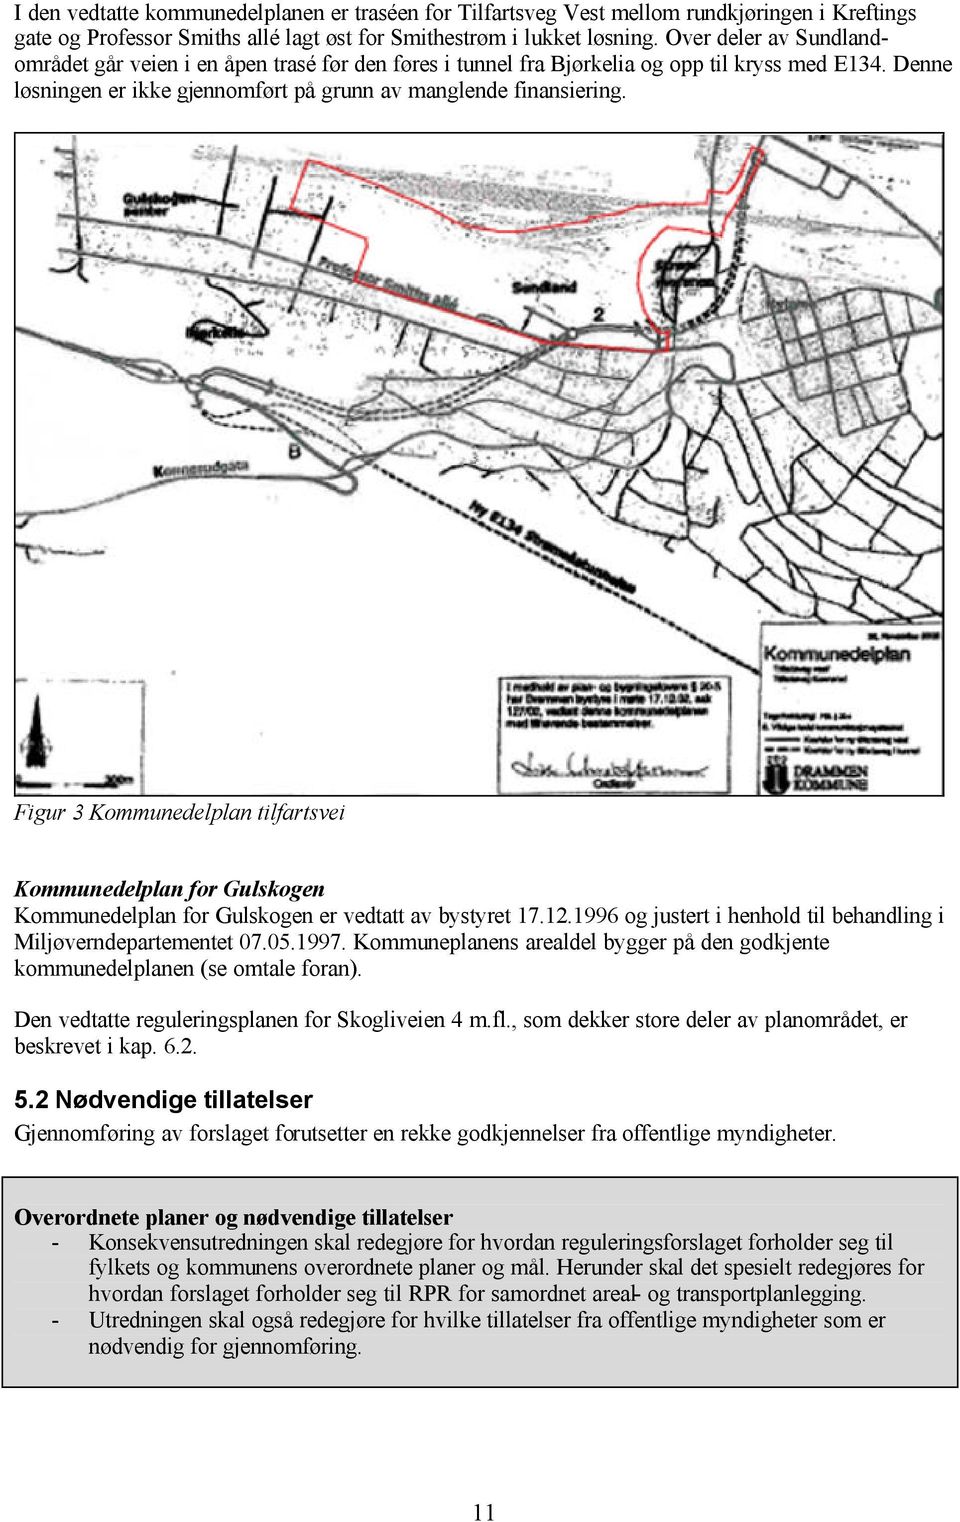 Figur 3 Kommunedelplan tilfartsvei Kommunedelplan for Gulskogen Kommunedelplan for Gulskogen er vedtatt av bystyret 17.12.1996 og justert i henhold til behandling i Miljøverndepartementet 07.05.1997.